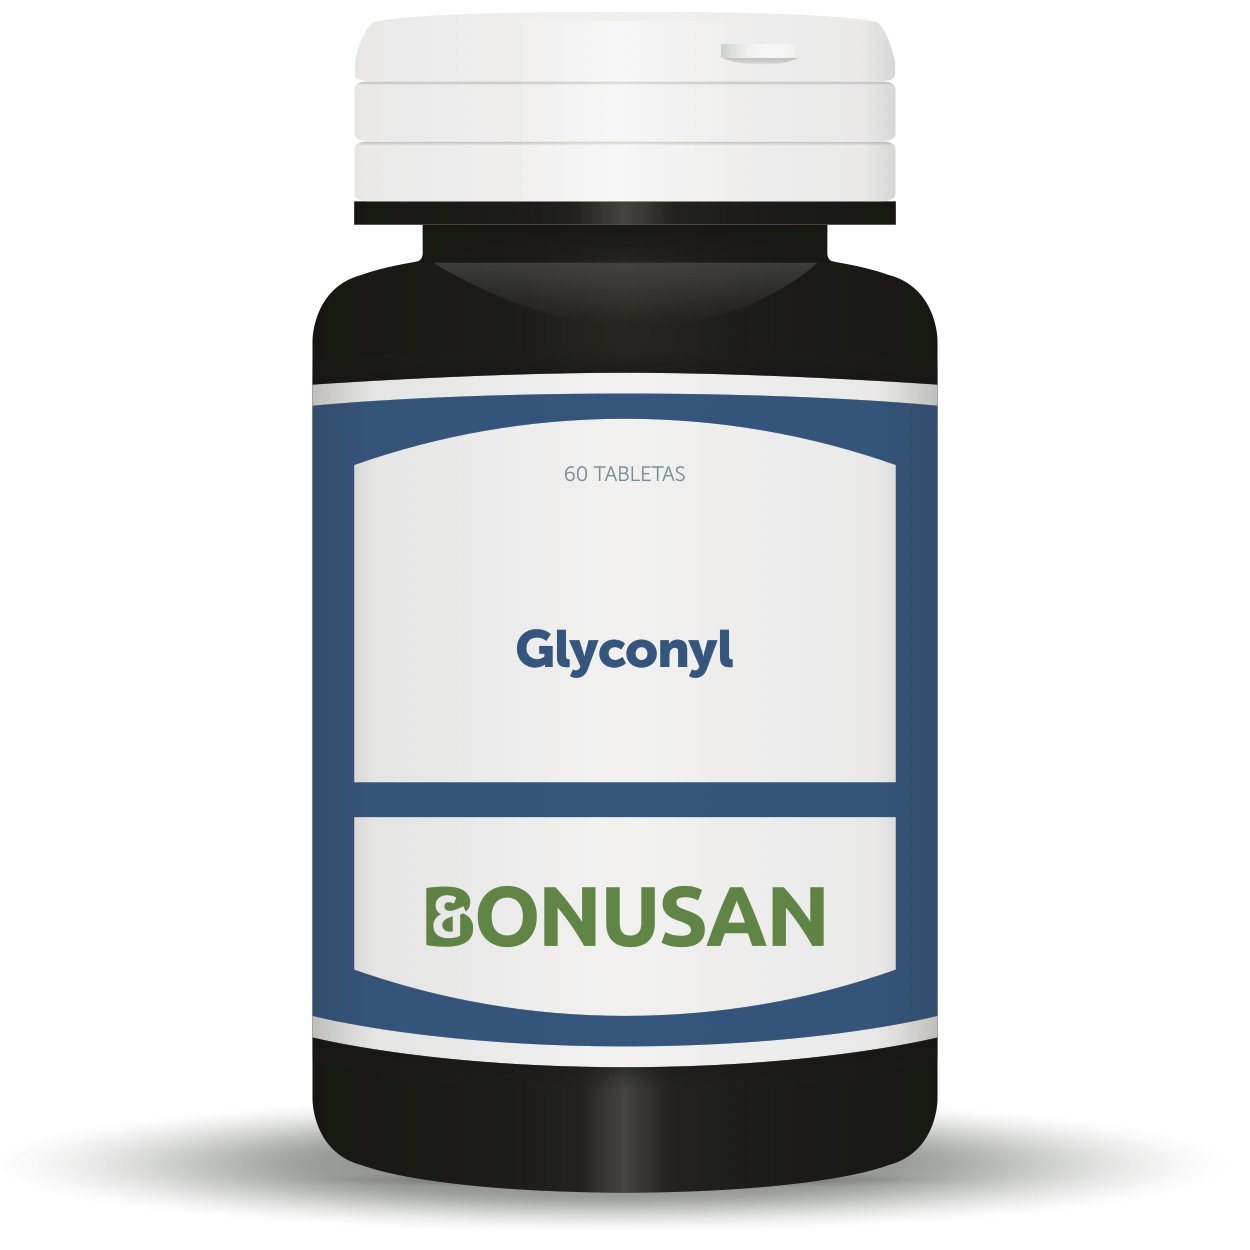 Glyconyl 60 Tabletas | Bonusan - Dietetica Ferrer